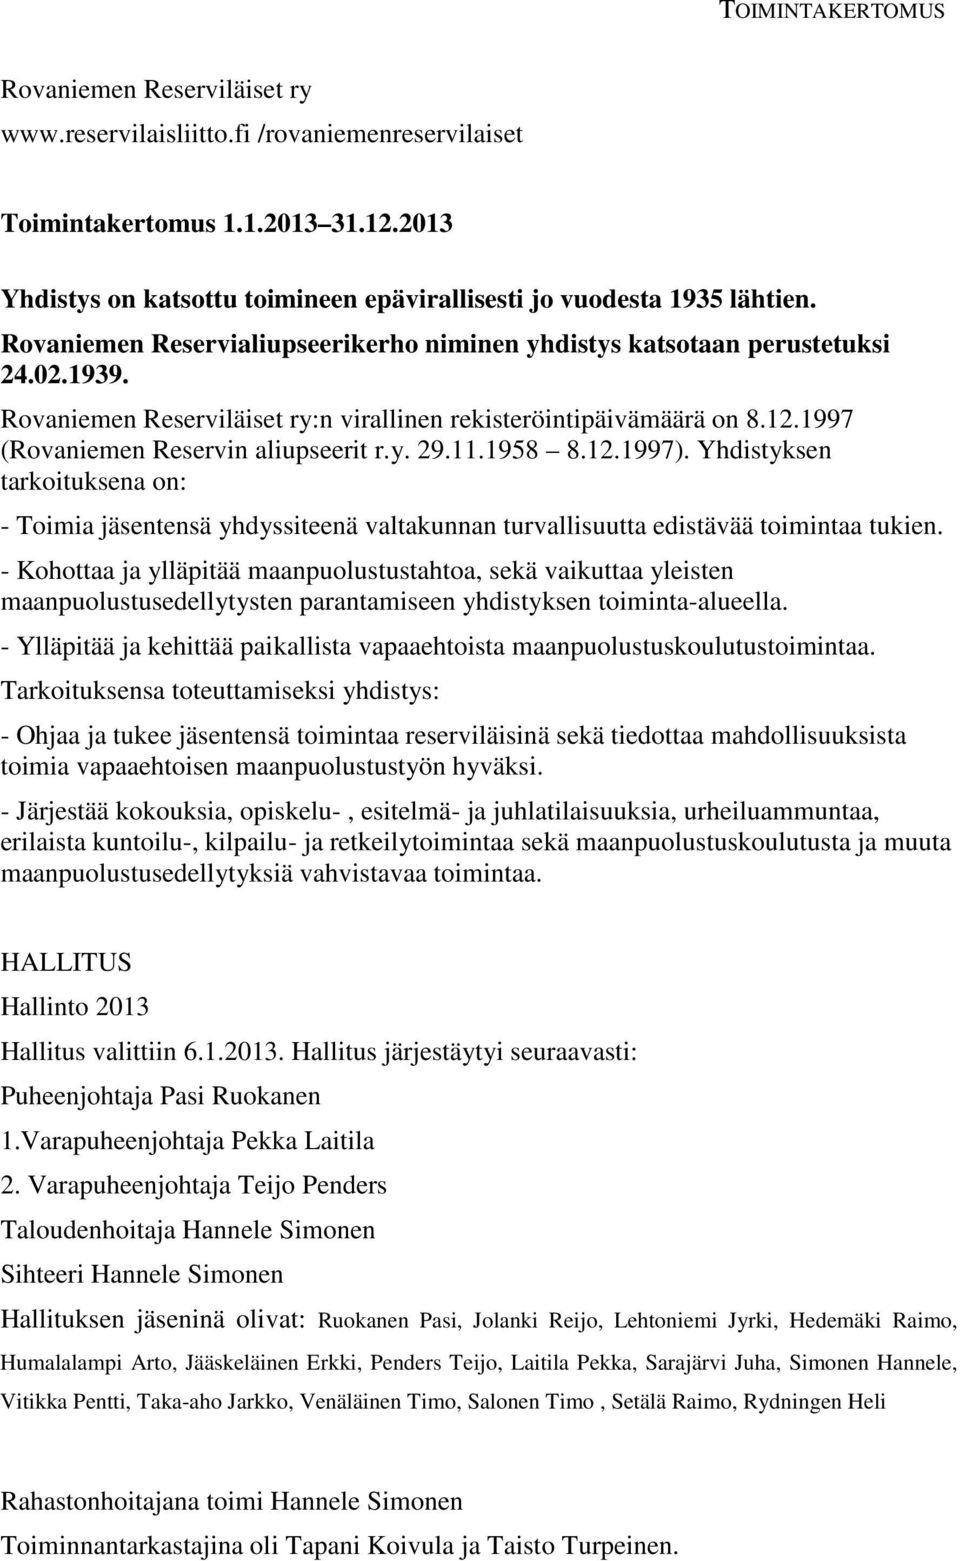 Rovaniemen Reserviläiset ry:n virallinen rekisteröintipäivämäärä on 8.12.1997 (Rovaniemen Reservin aliupseerit r.y. 29.11.1958 8.12.1997).